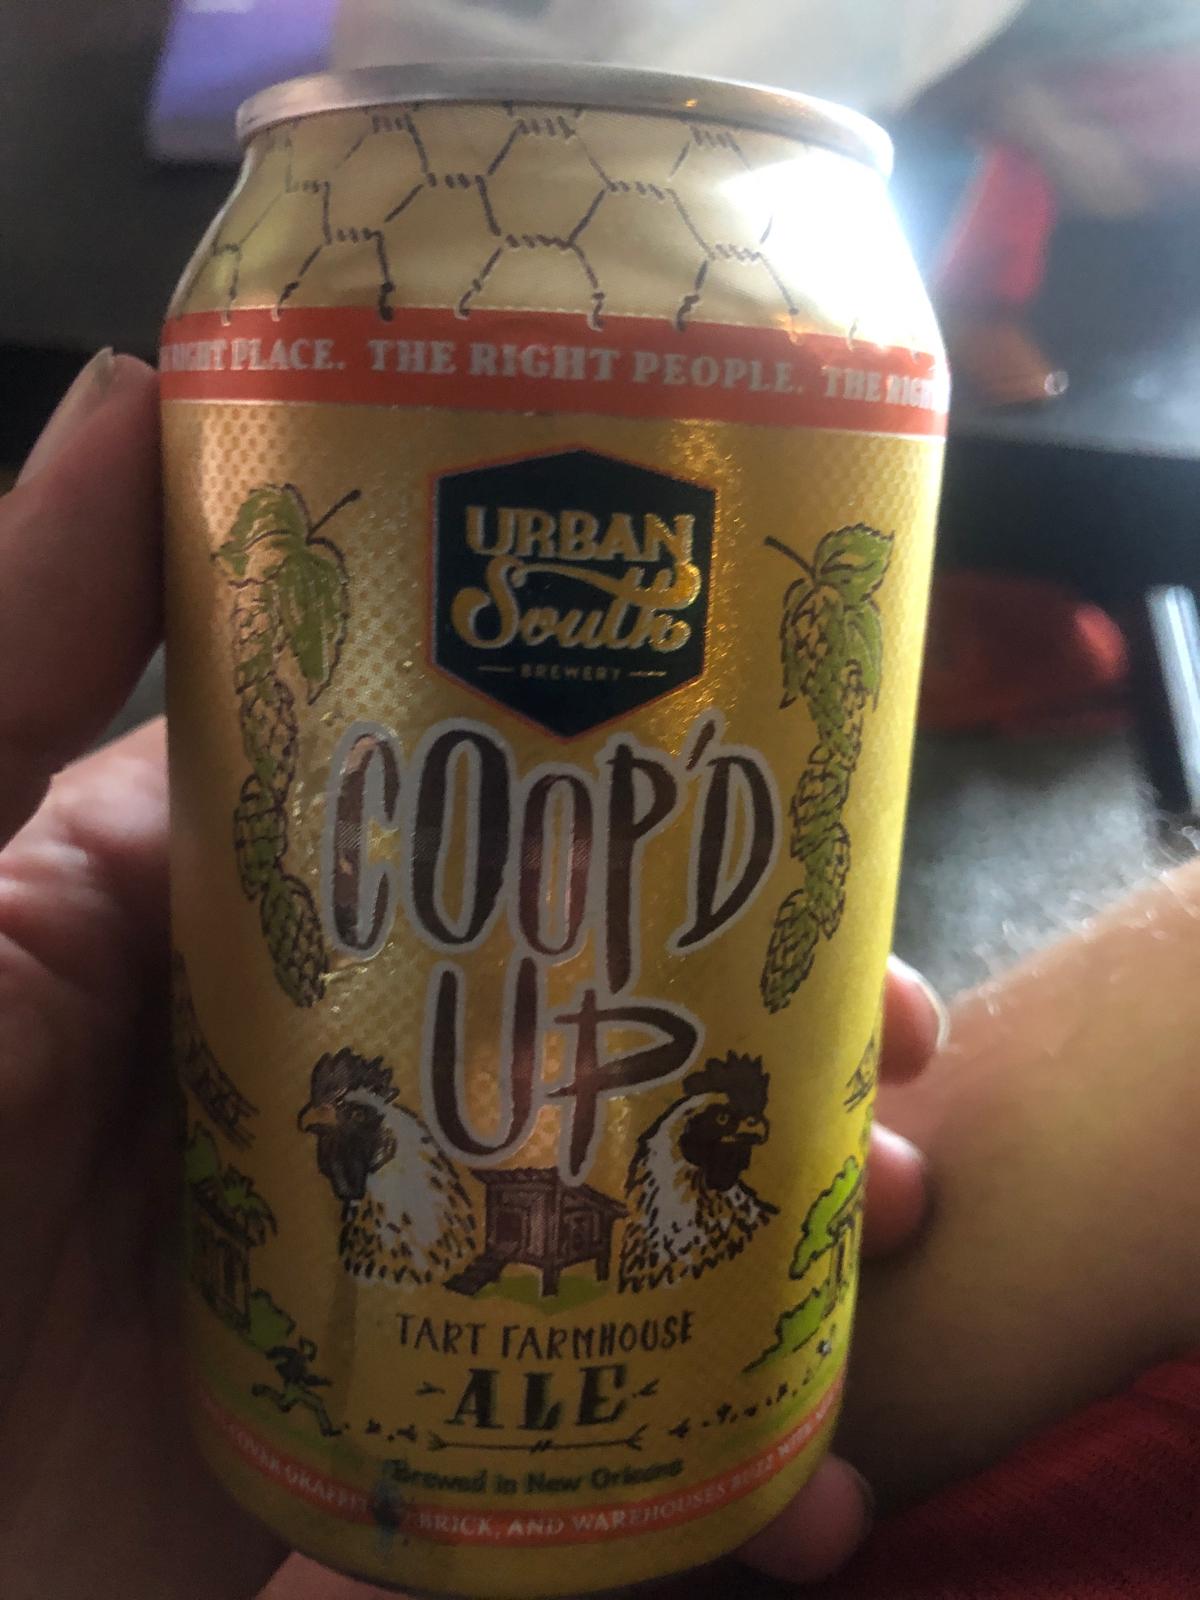 Coop’d Up